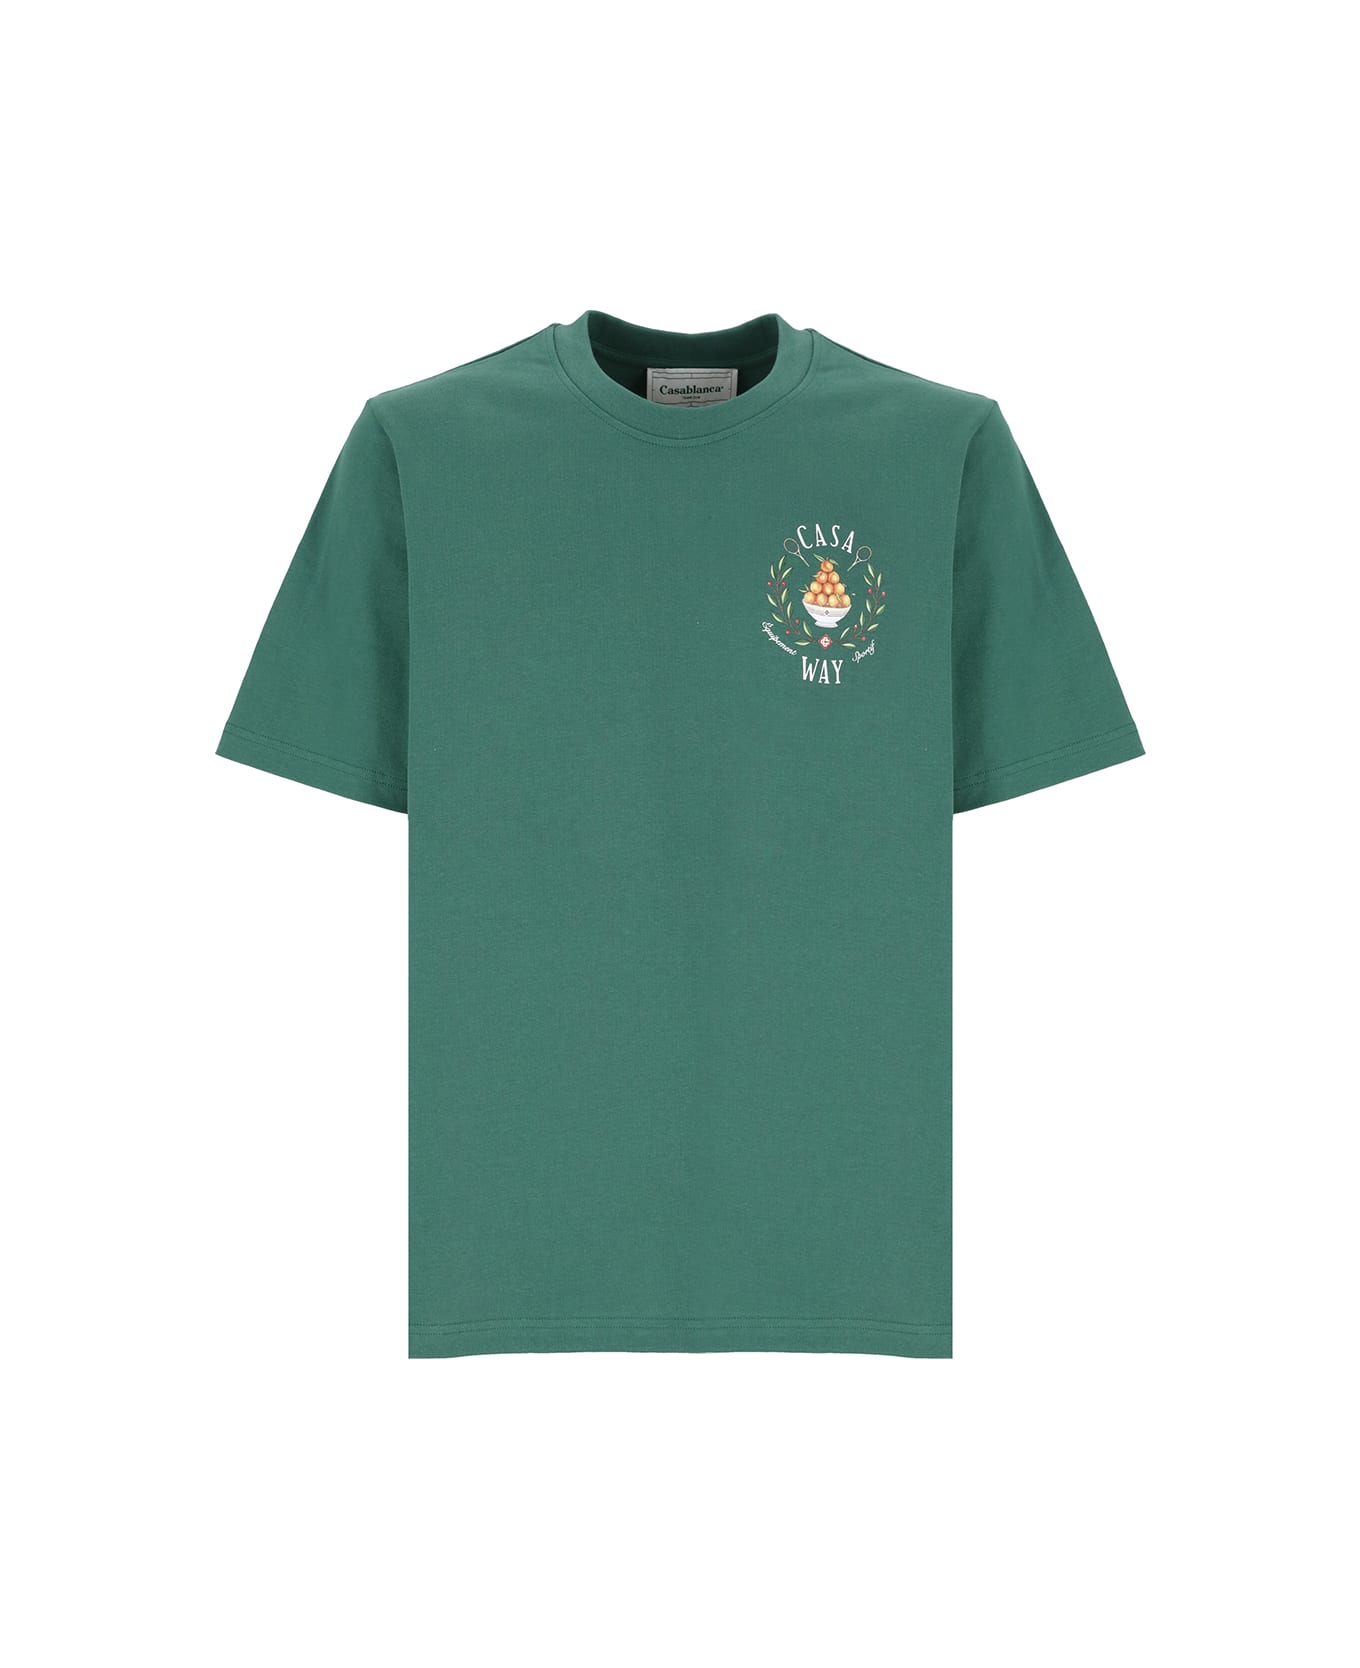 Casablanca Casa Way Printed T-shirt - Green シャツ